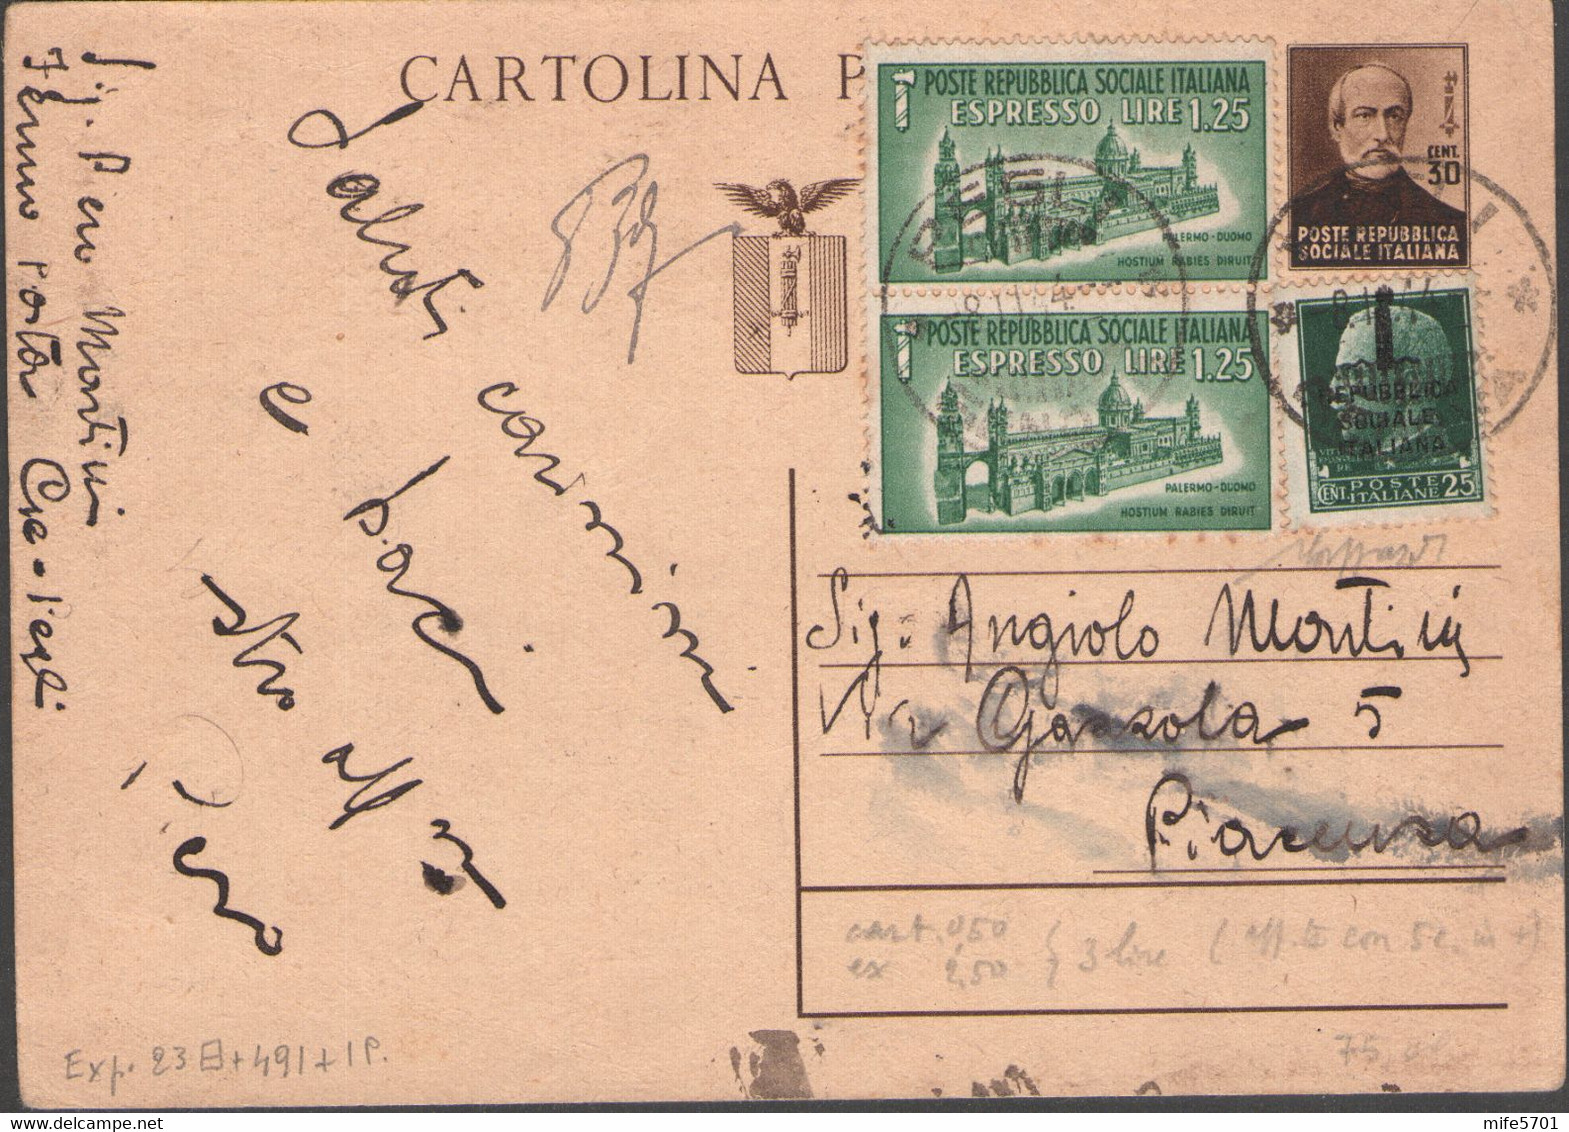 RSI INTERO POSTALE GIUSEPPE MAZZINI + 2 ESPRESSI 'DUOMO DI PALERMO' PEGLI 8.11.1944 - FILAGRANO C112 + SASSONE E23 + 491 - Stamped Stationery